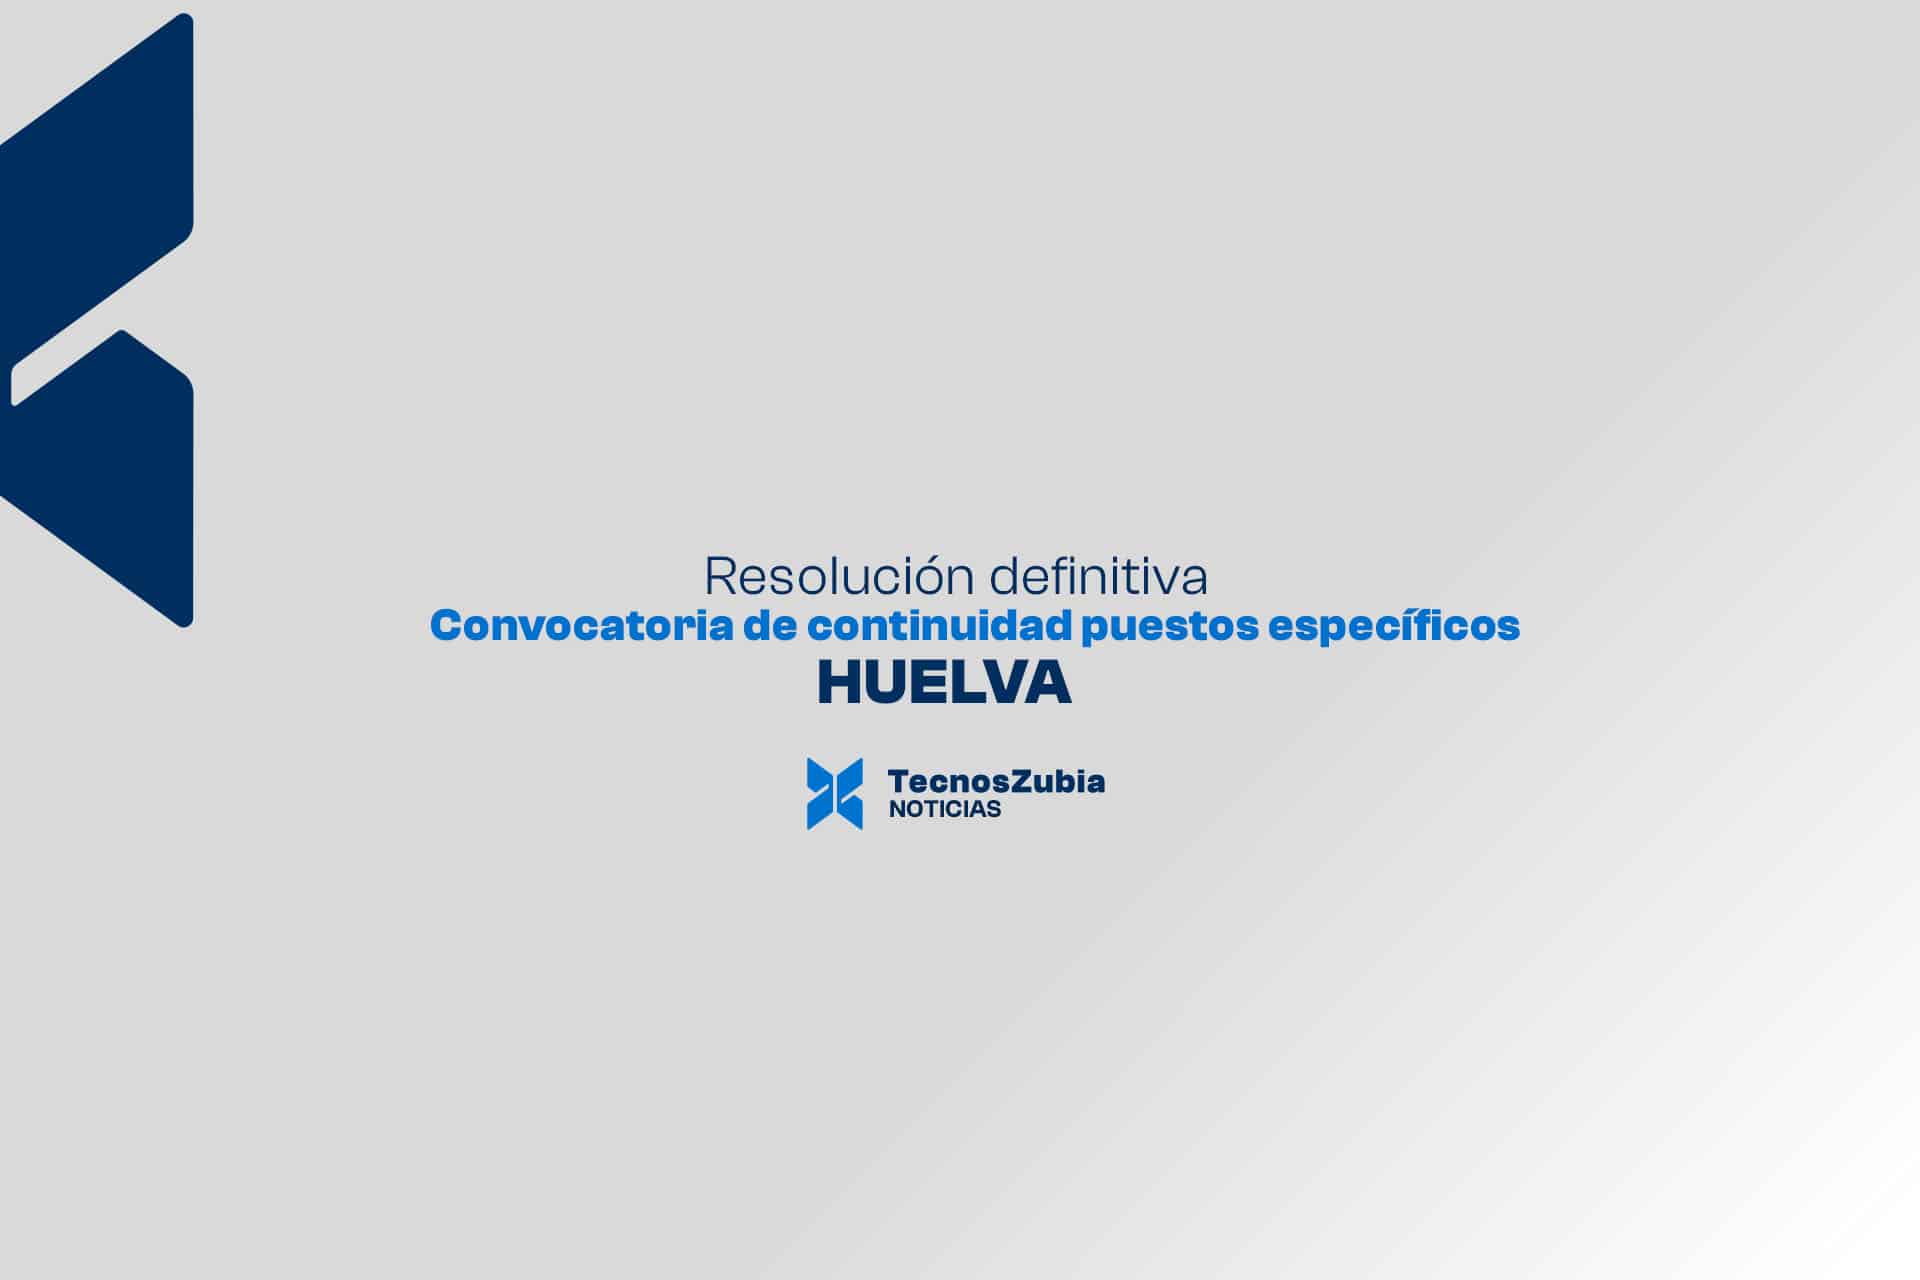 Convocatoria de continuidad puestos específicos Huelva. Resolución definitiva